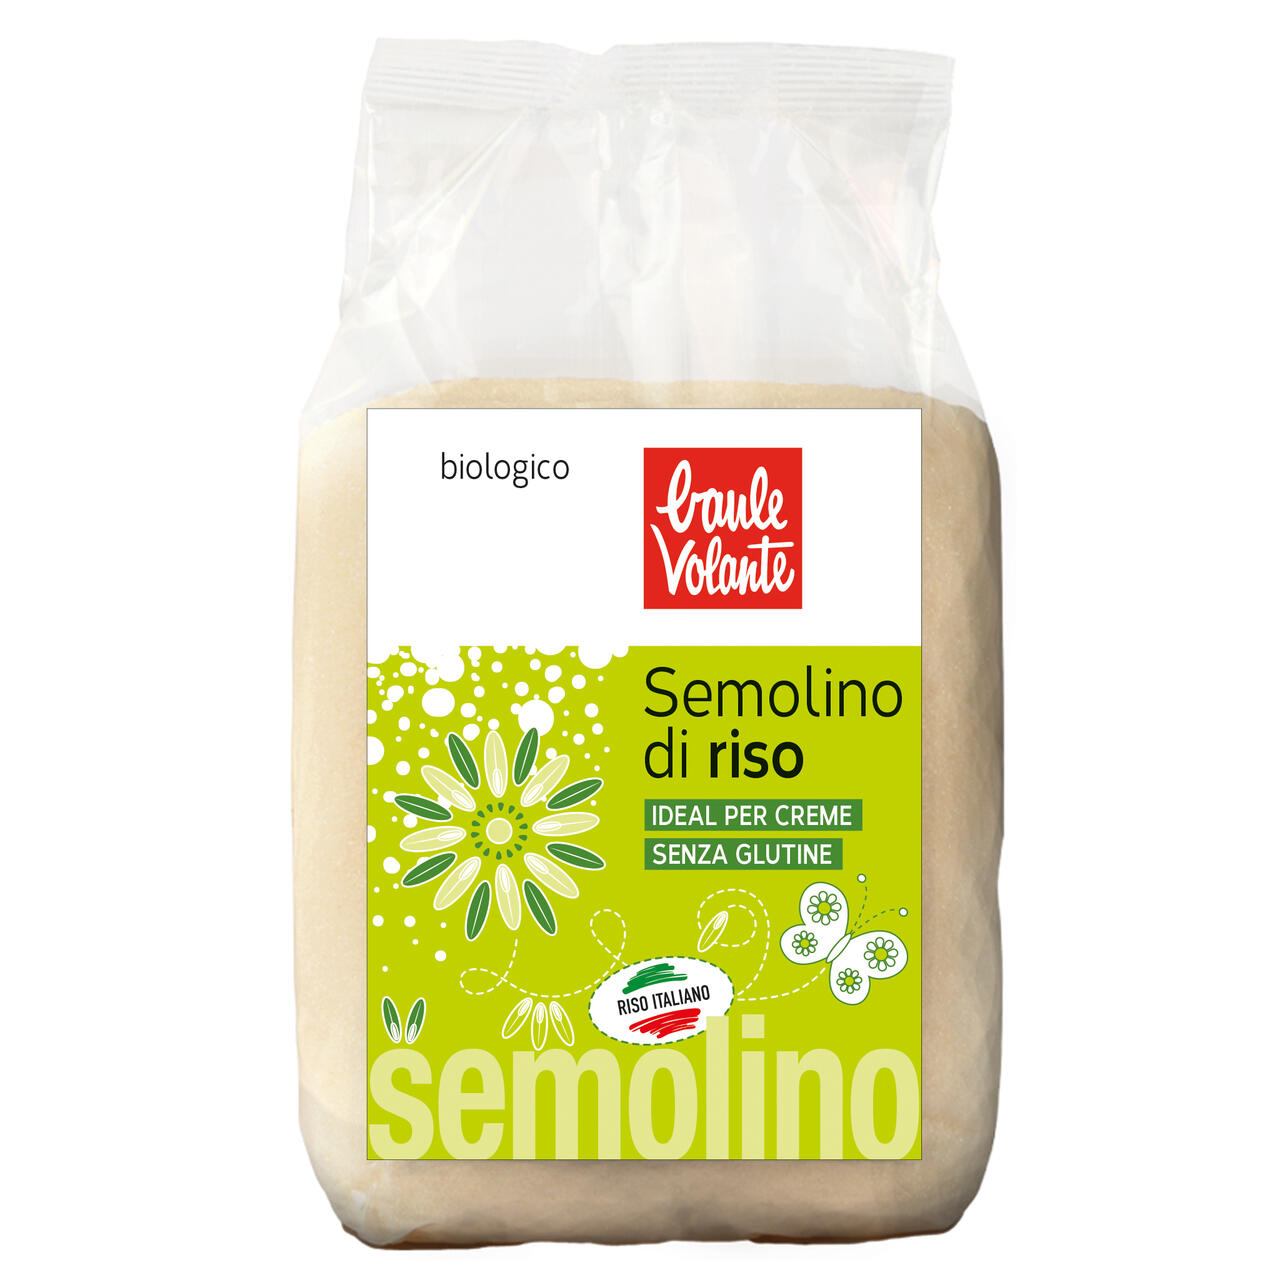 SEMOLINO DI RISO 500G  BAULE